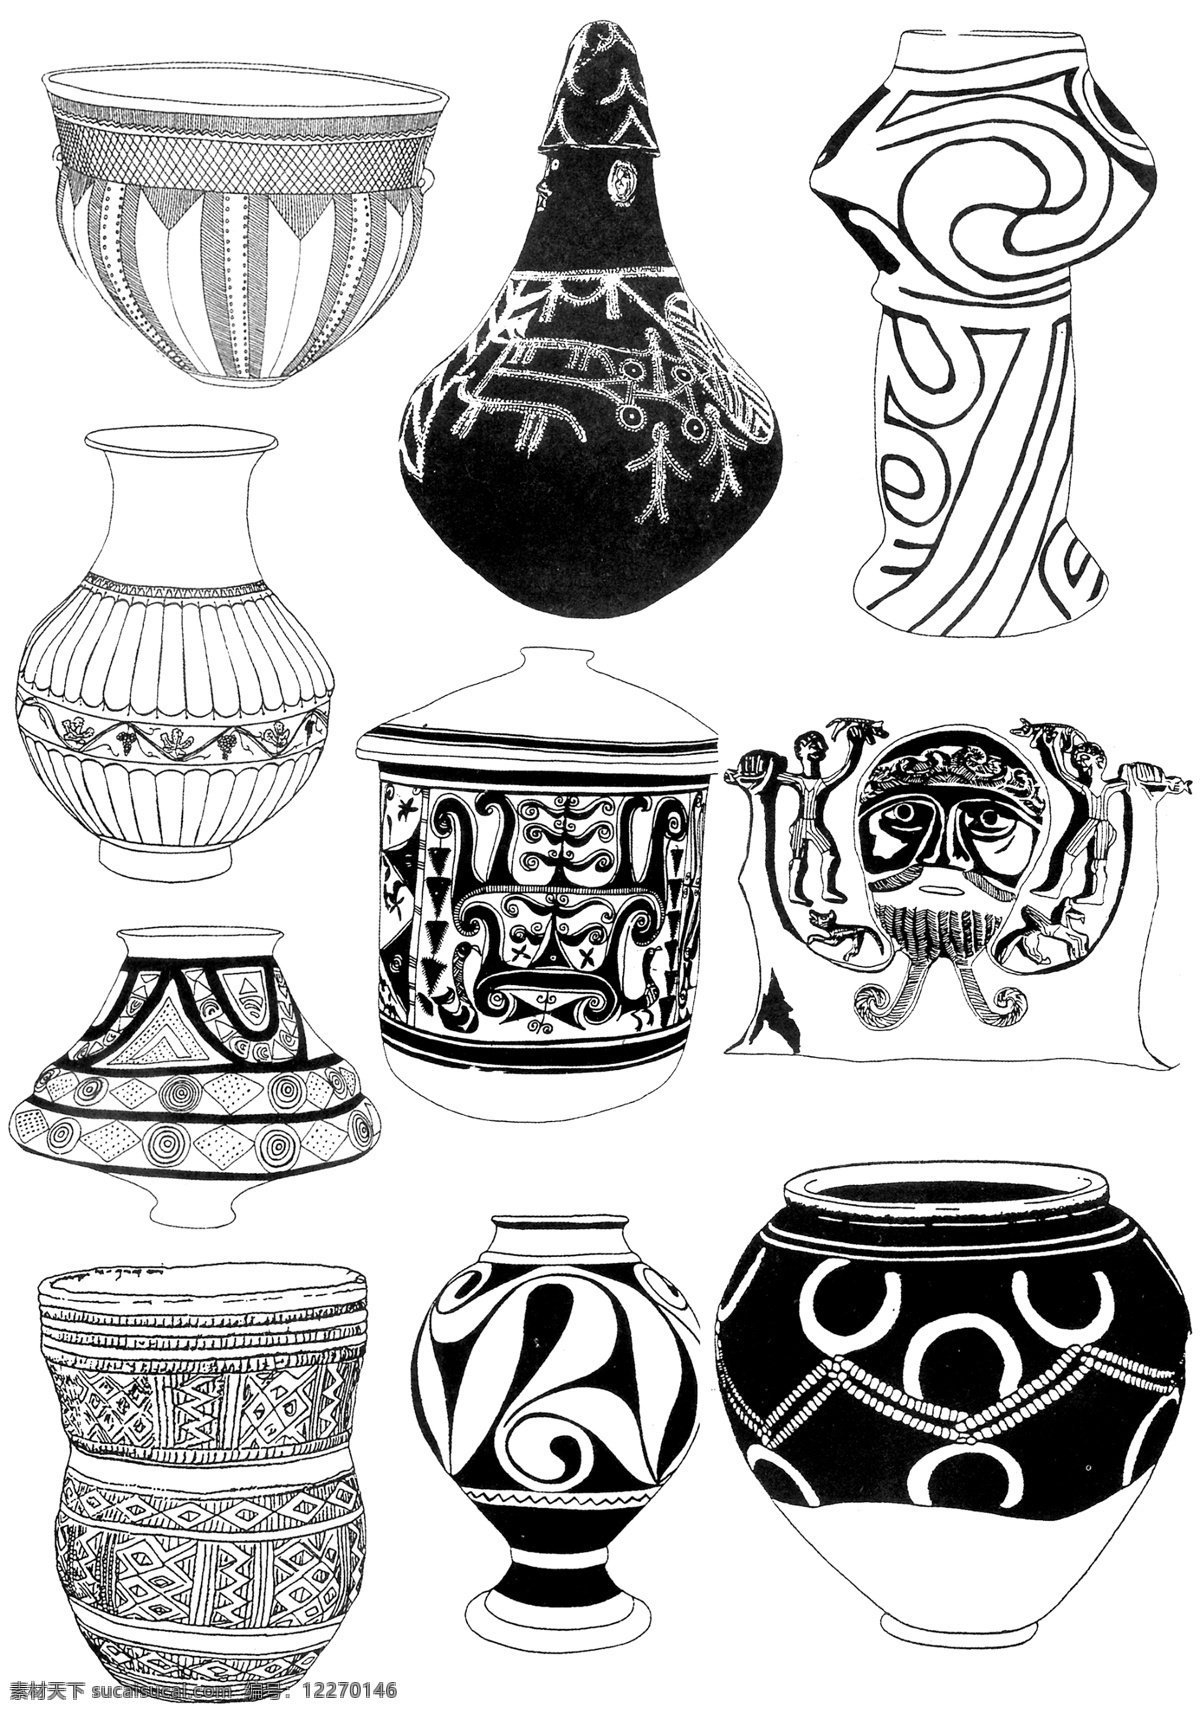 陶器瓦罐纹样 陶器纹饰 几何纹 抽象花纹 瓶罐形状 早期艺术装饰 背景底纹 底纹边框